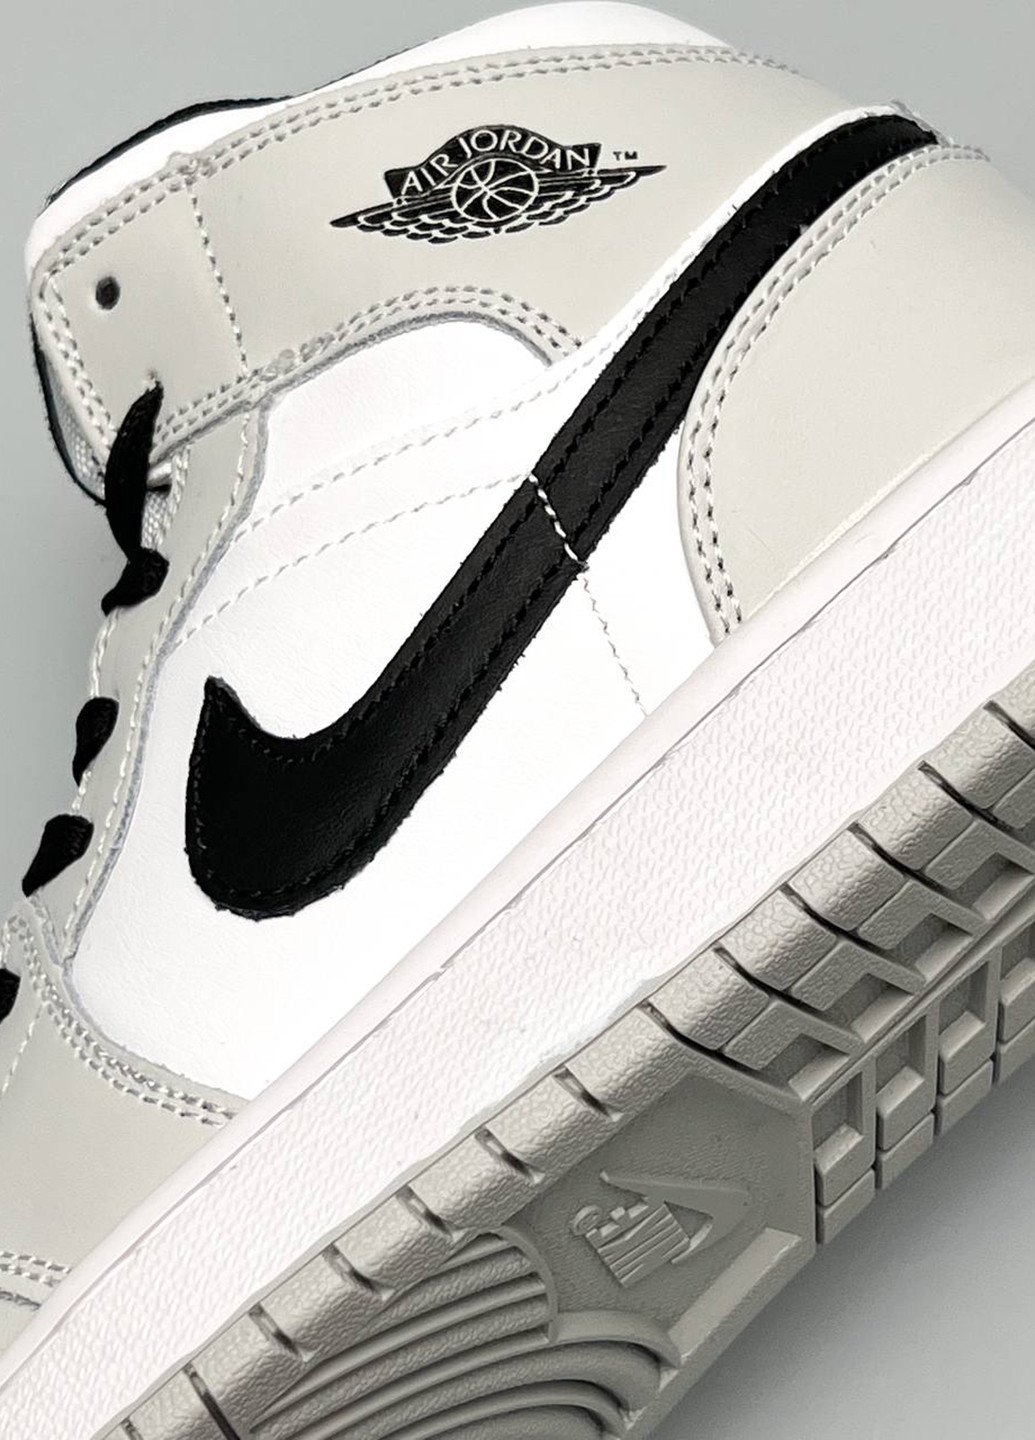 Цветные всесезонные кроссовки Nike Air Jordan High Gray Black